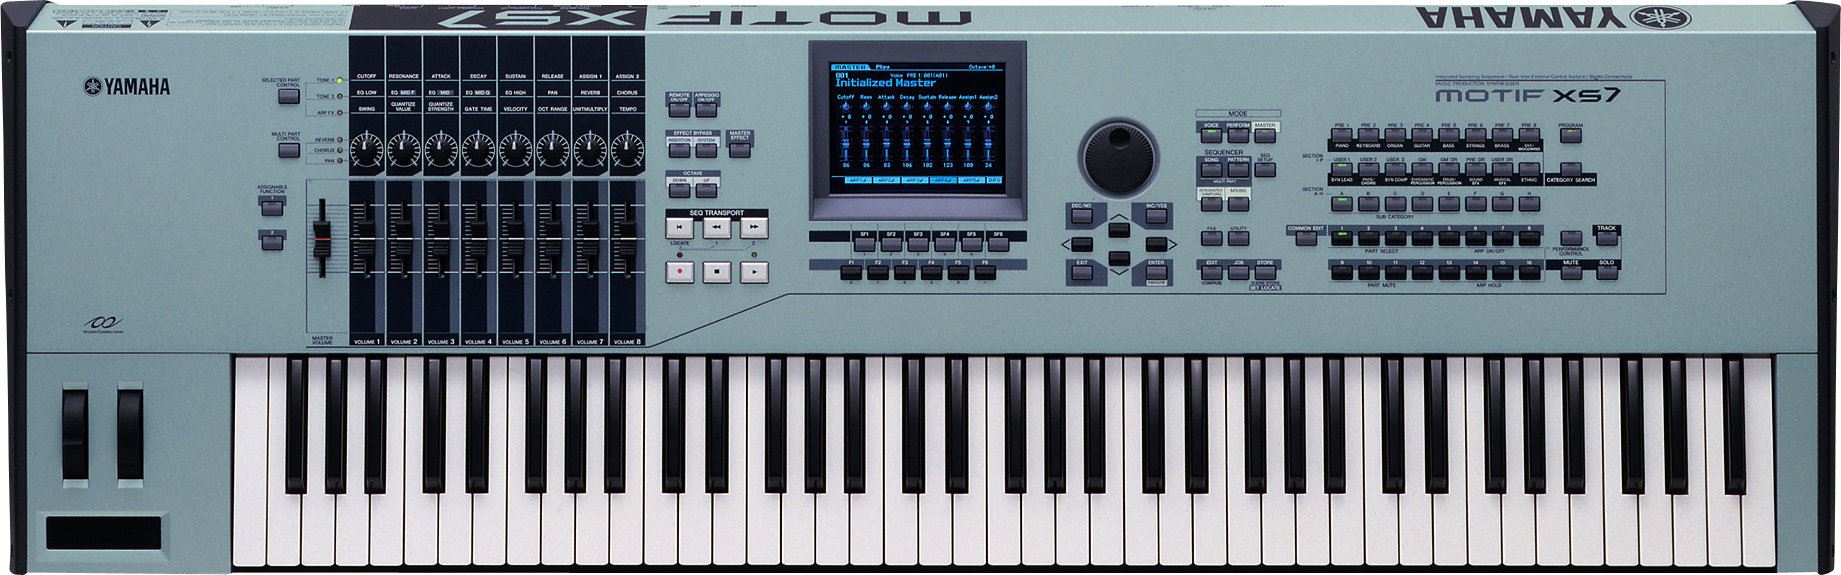 Motif XS7 76 Key Music Production Synthesizer v1.60